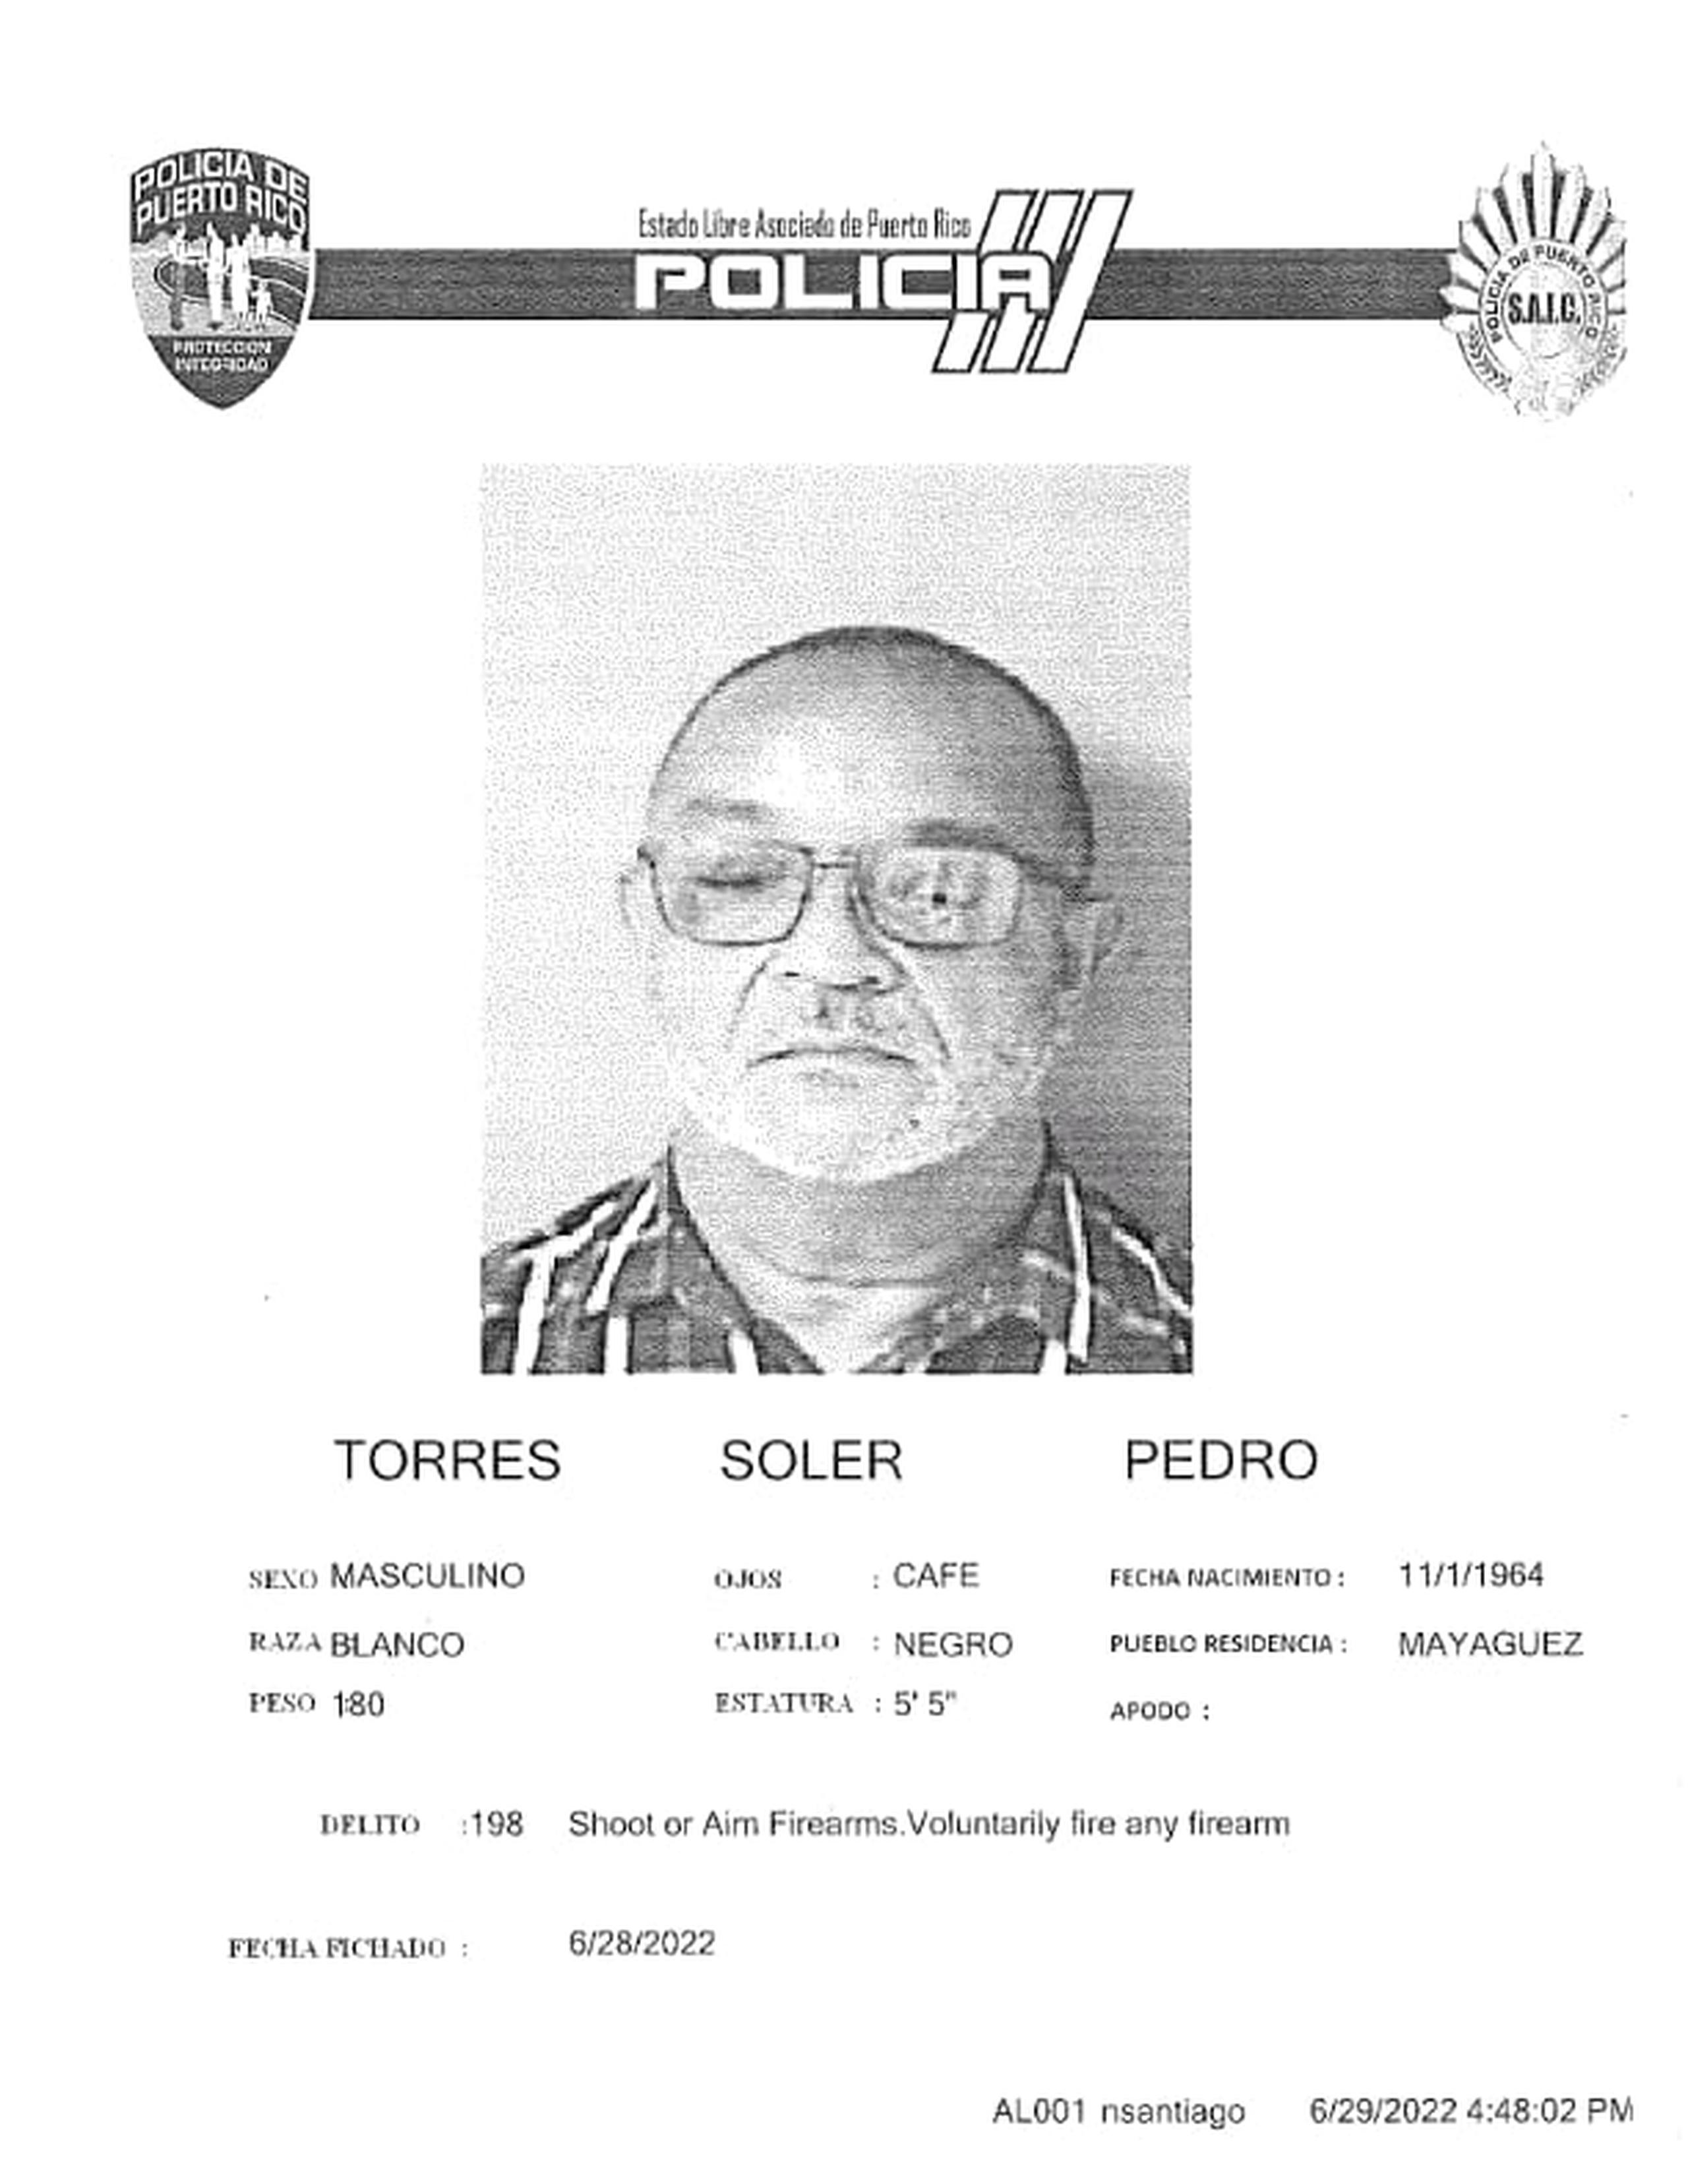 Pedro Torres Soler de 57 años, fue acusado por violación a la Ley de Armas y quedó en libertad al prestar una fianza de $5,000.00.